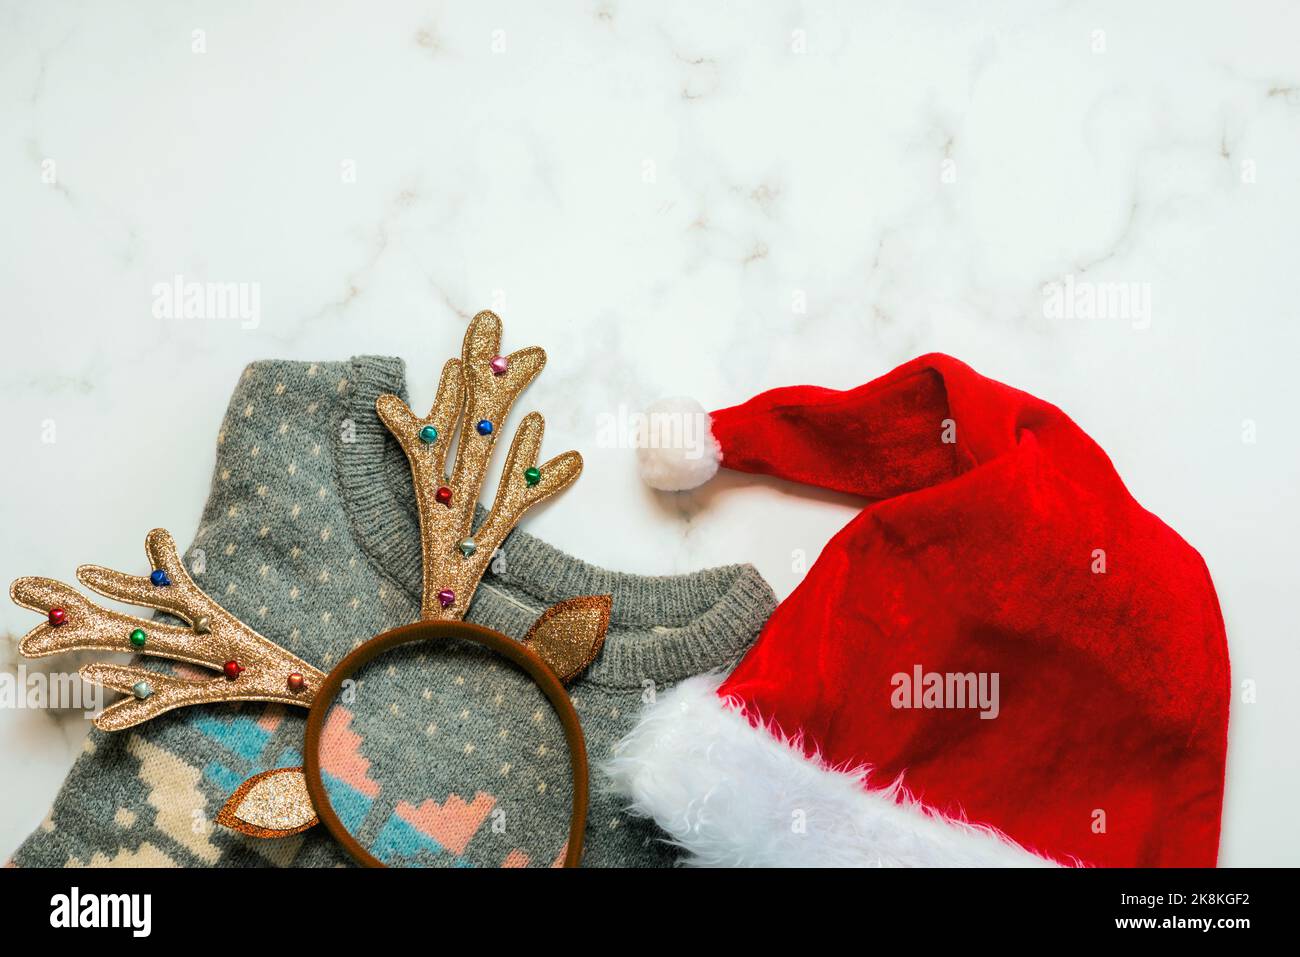 Joyeux Noël.Vue de dessus du chandail de noël avec bois de cerf de noël et chapeau de Père Noël sur une table en marbre Banque D'Images